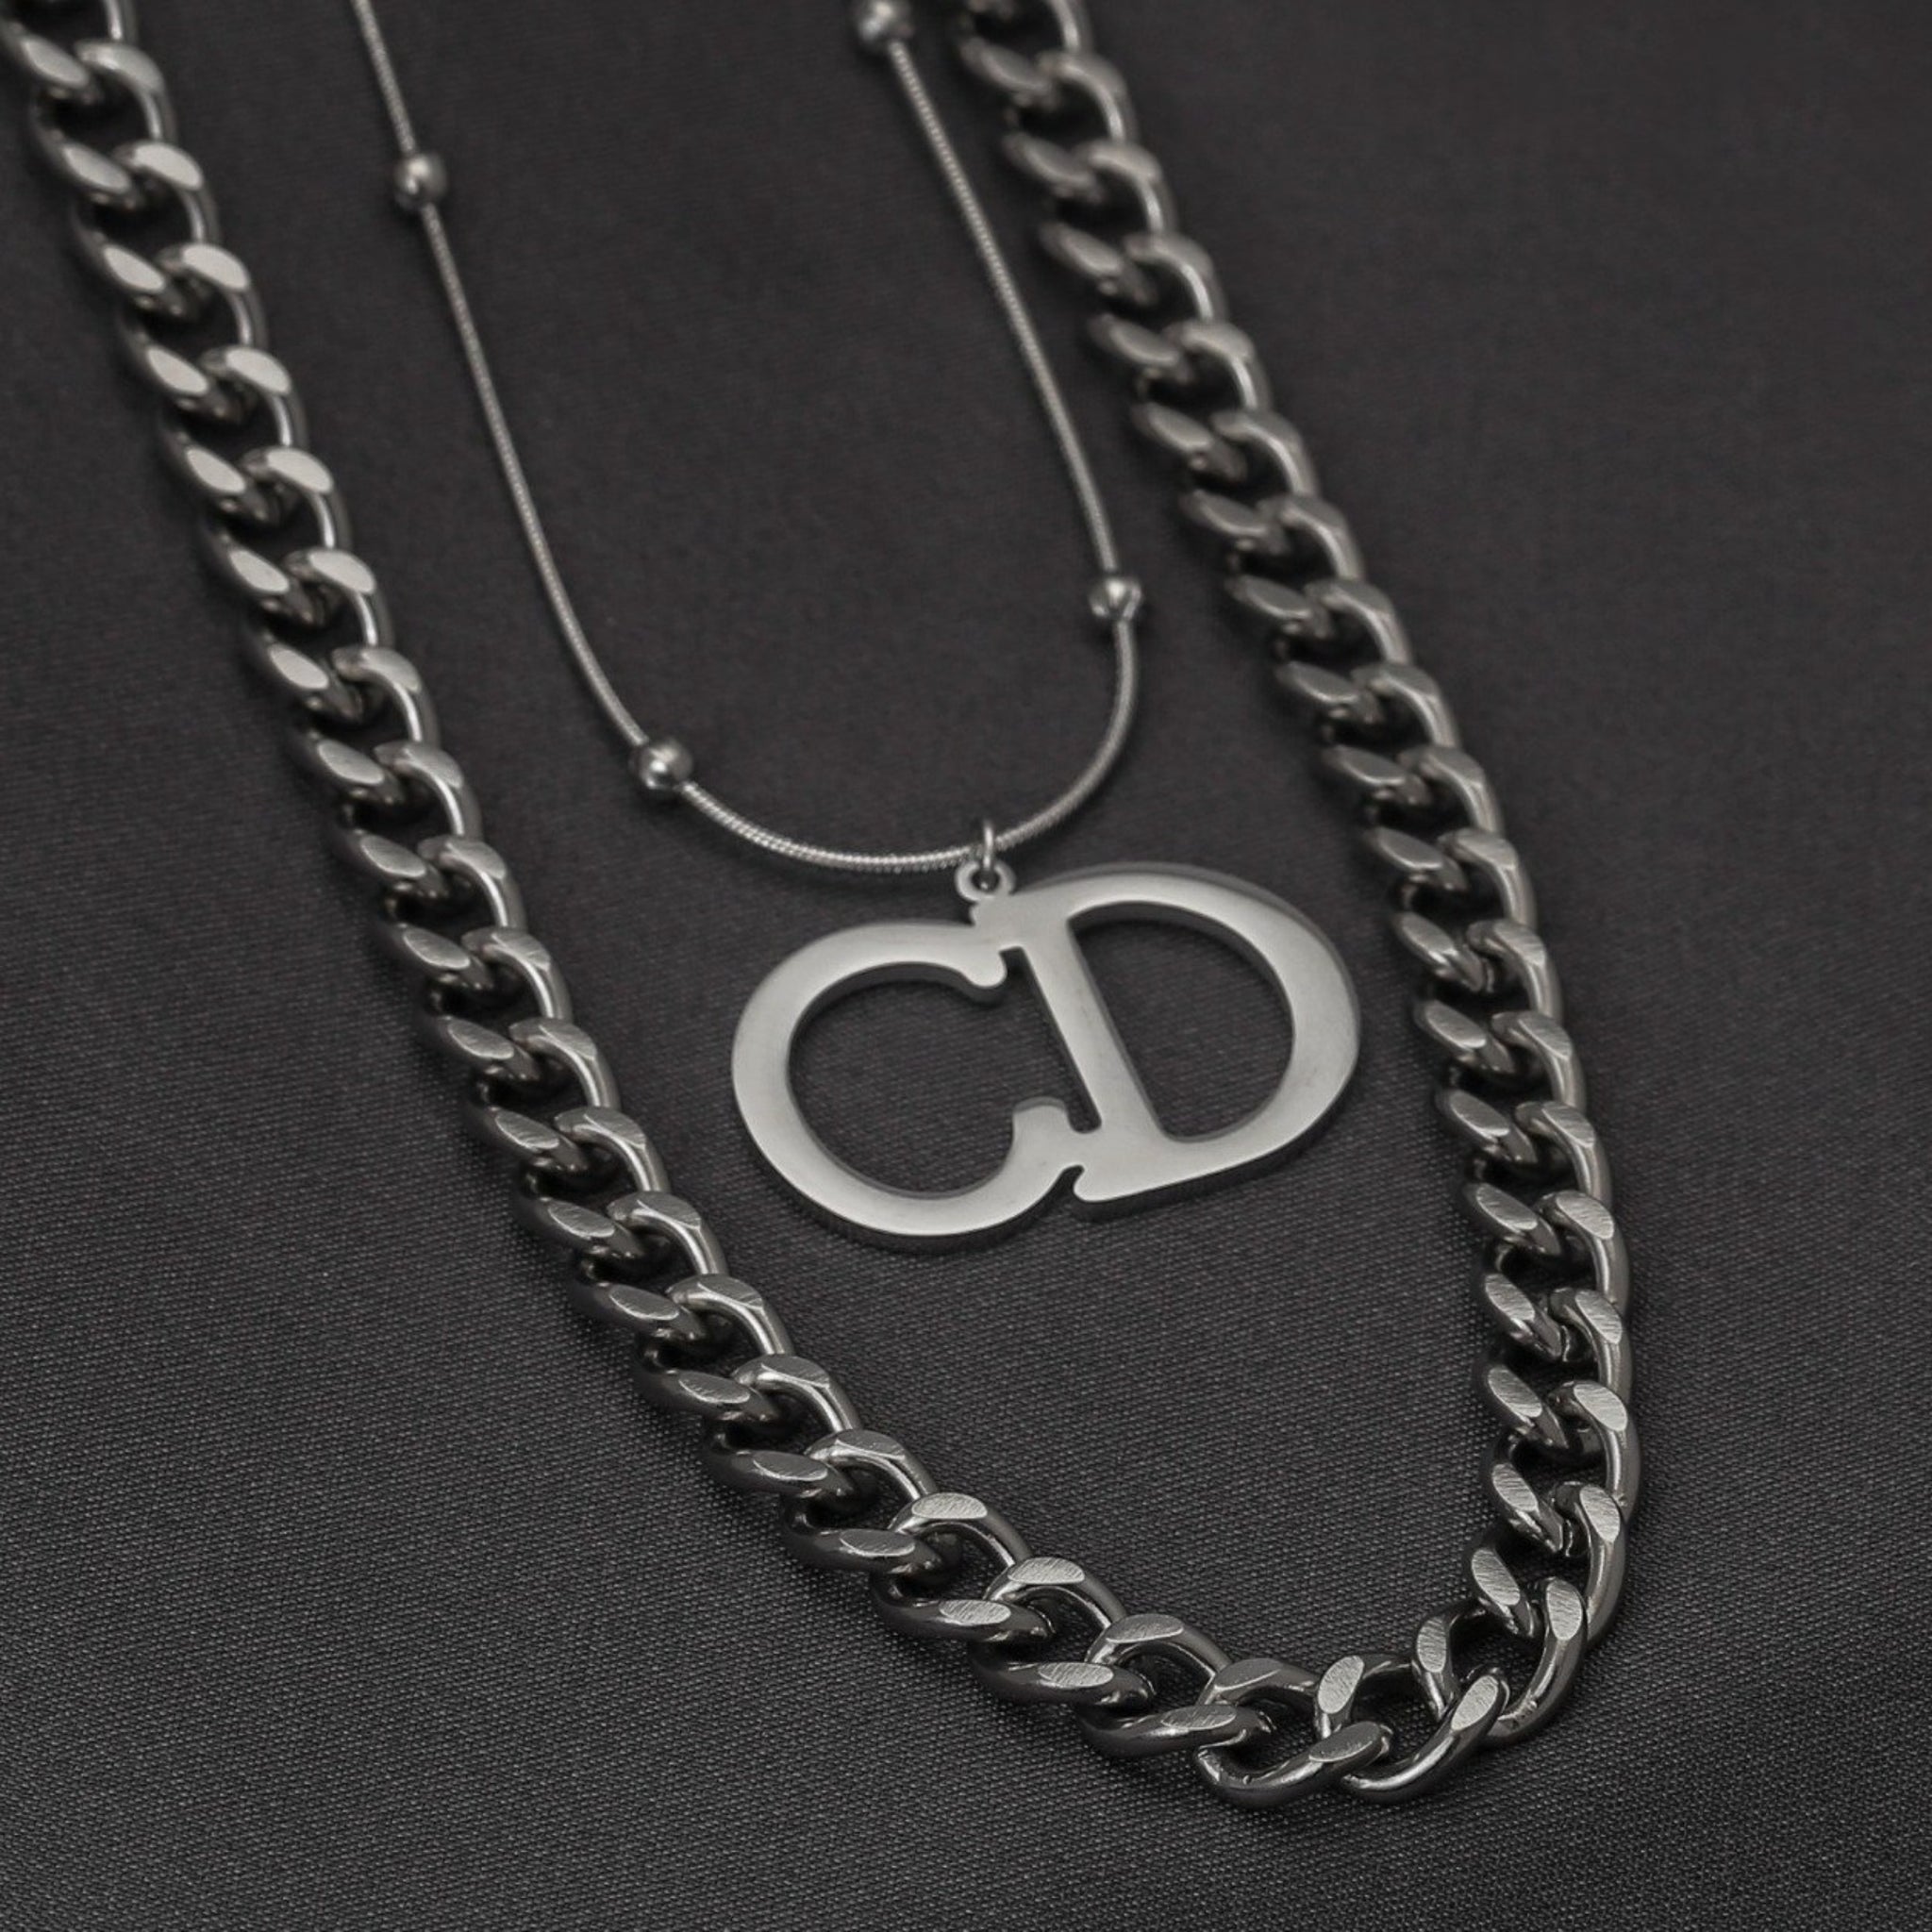 Dc- Pendant Silver Necklace